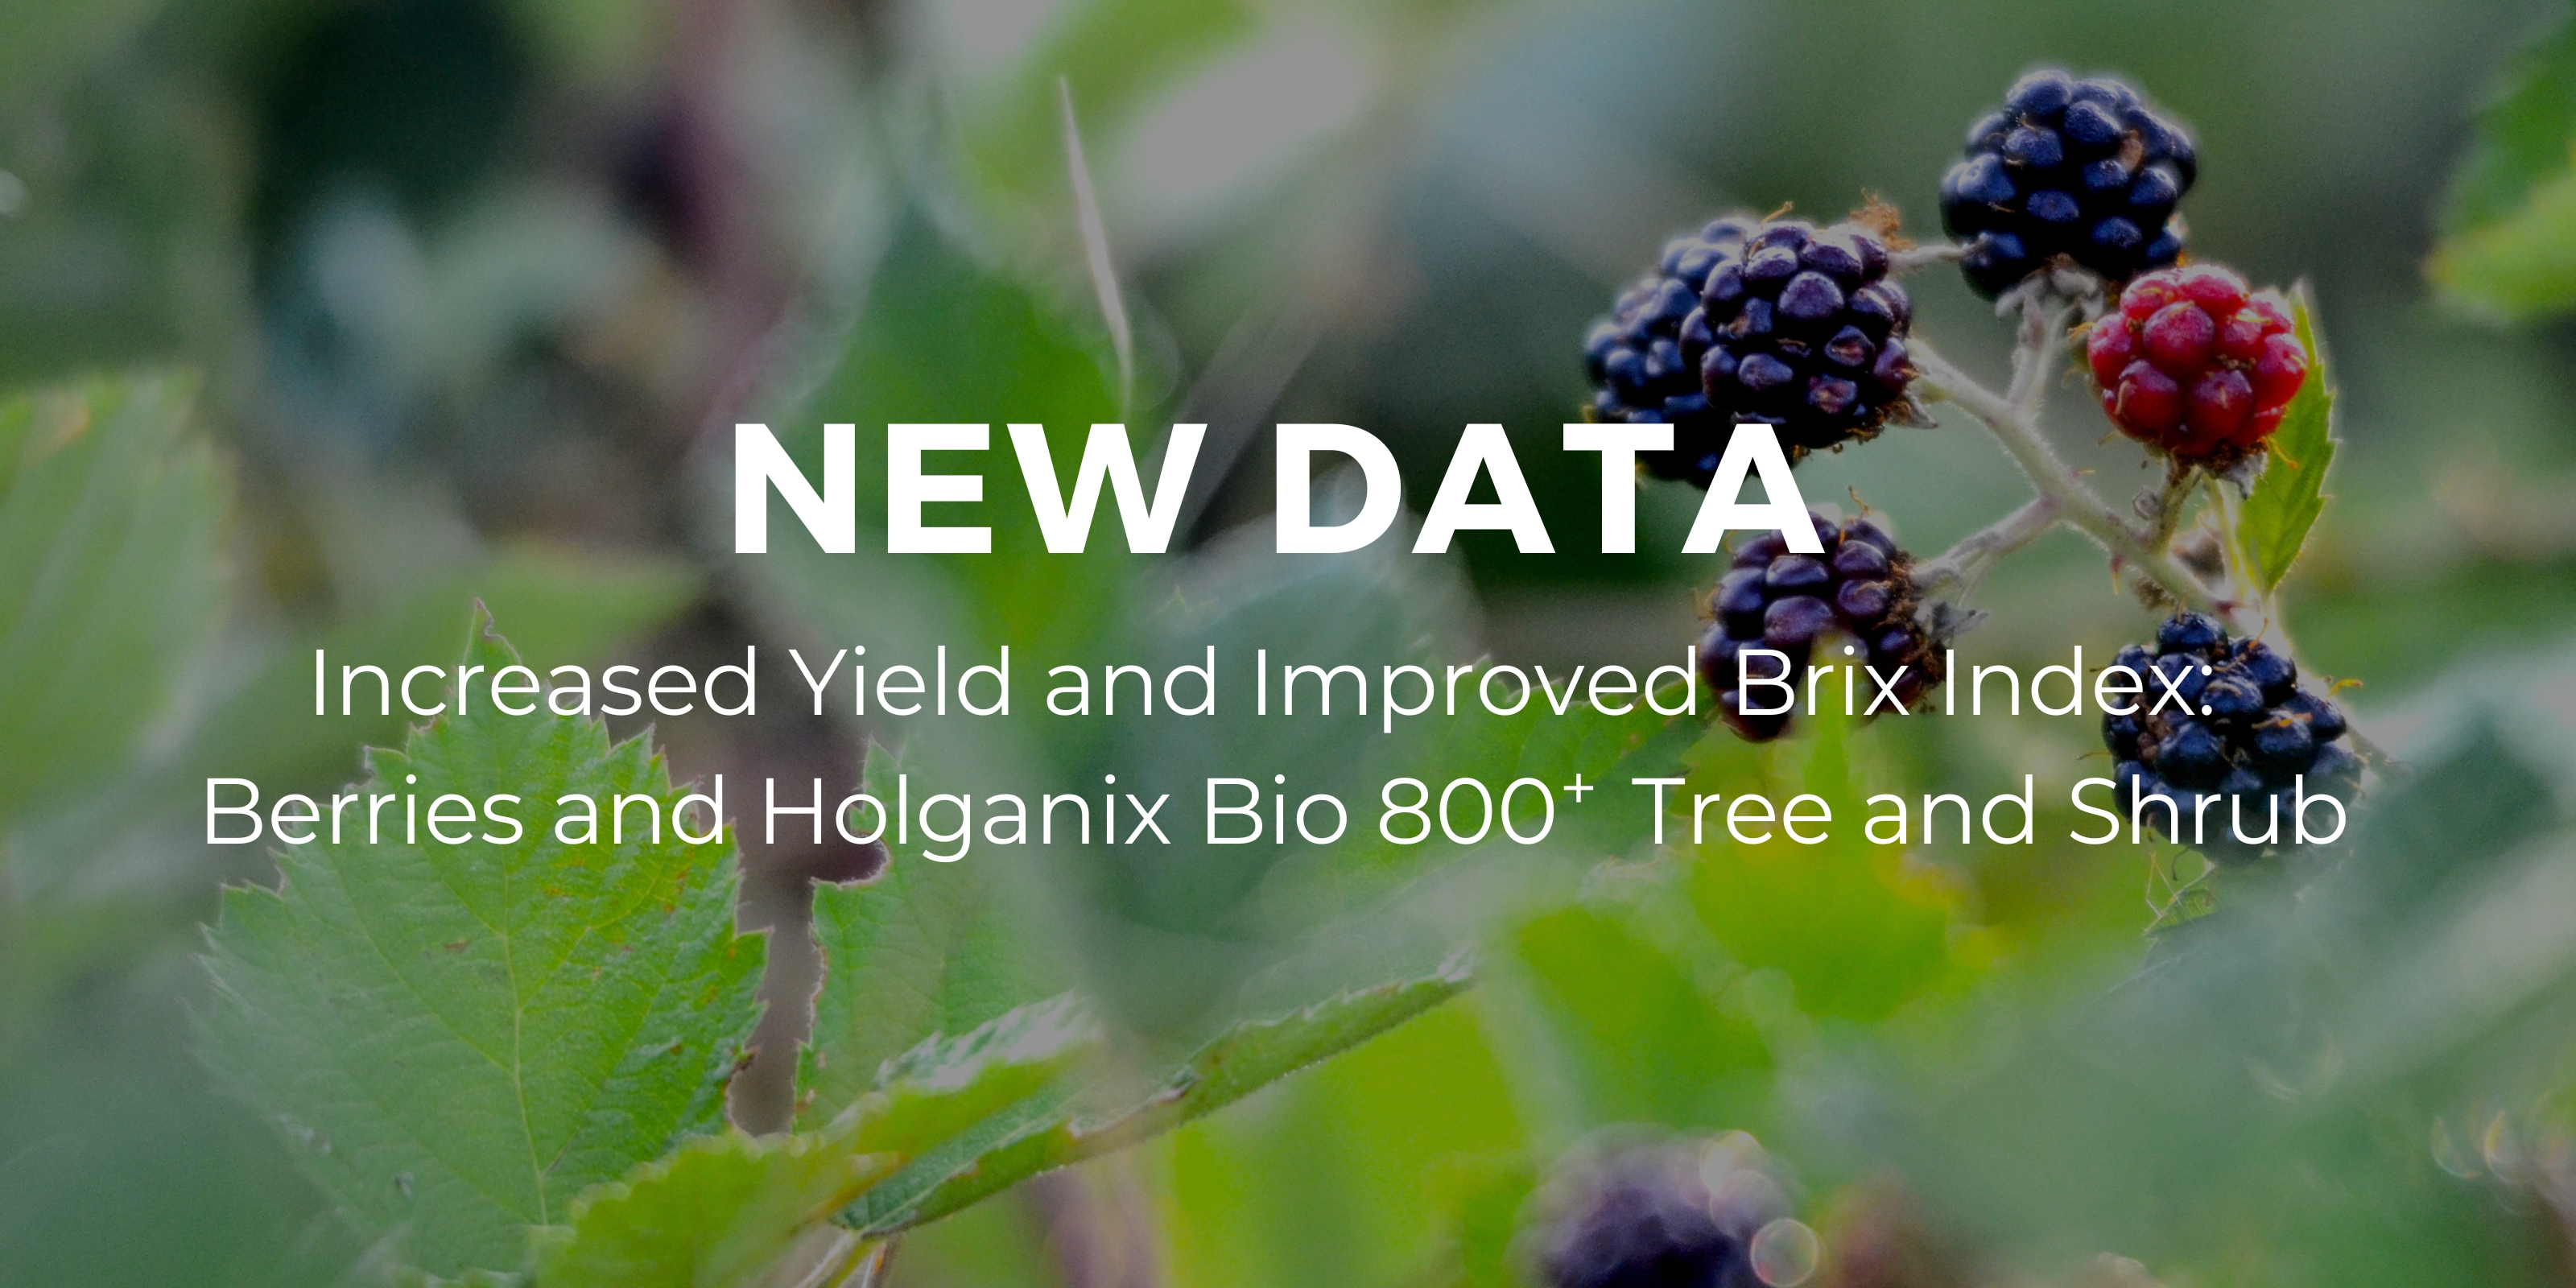 Using Holganix Bio 800 on Berries